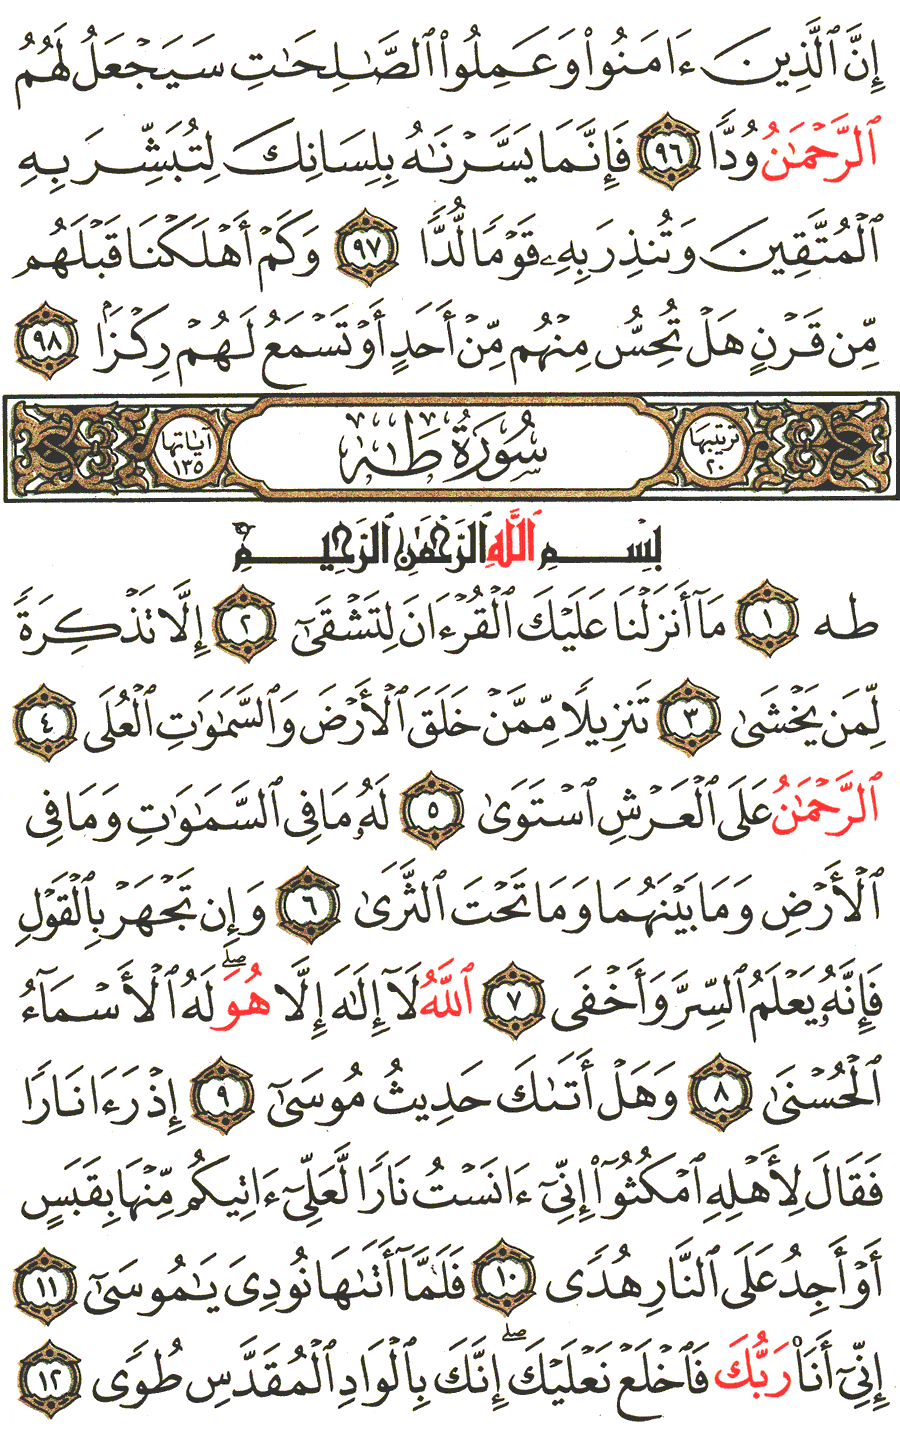 الصفحة رقم 312  من القرآن الكريم مكتوبة من المصحف